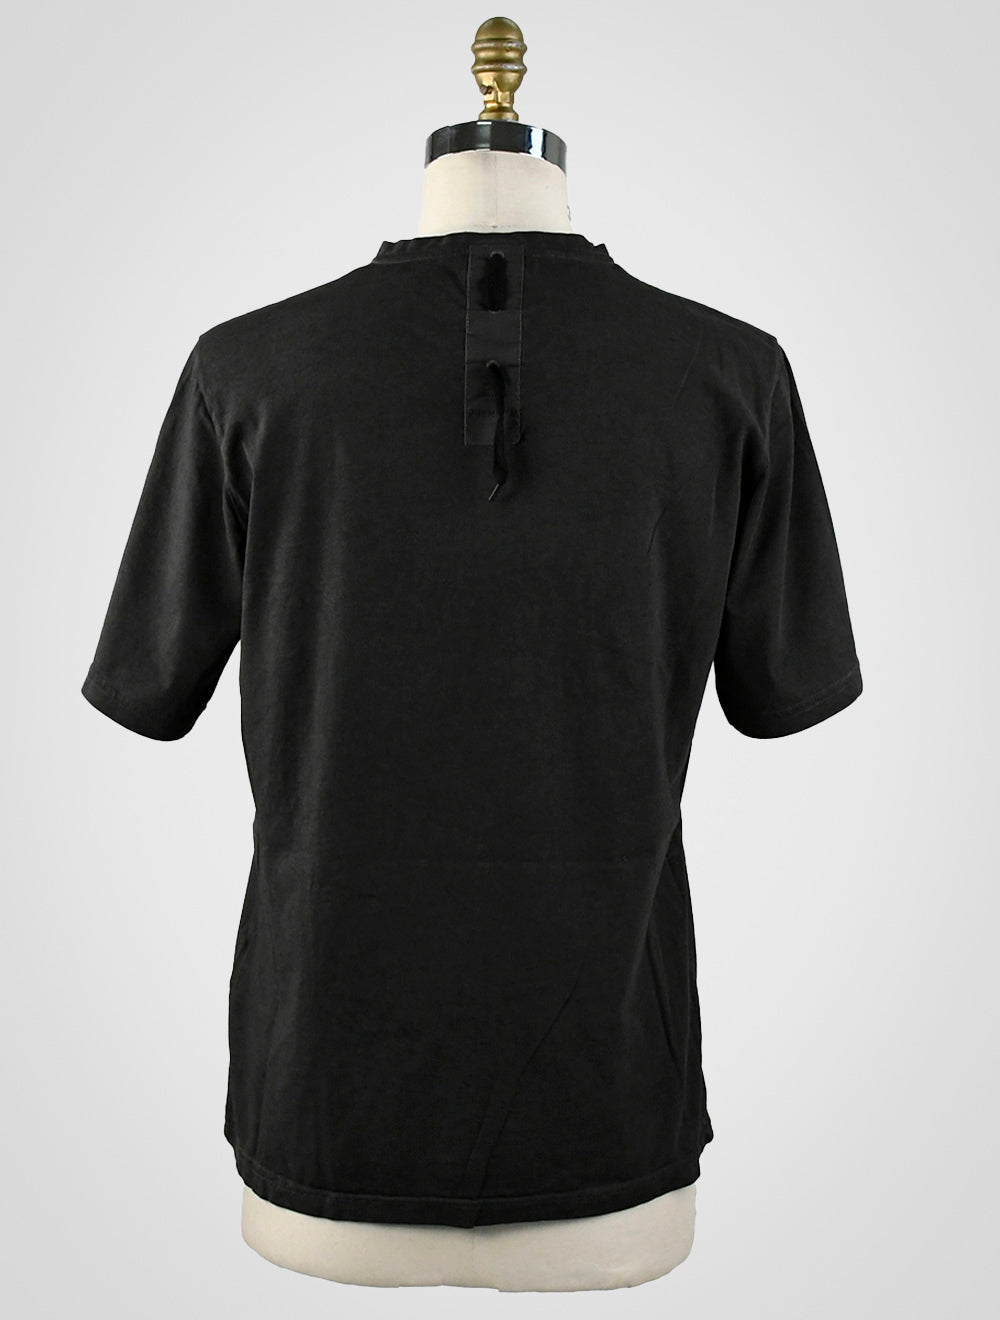 Premiata T-Shirt aus schwarzer Baumwolle